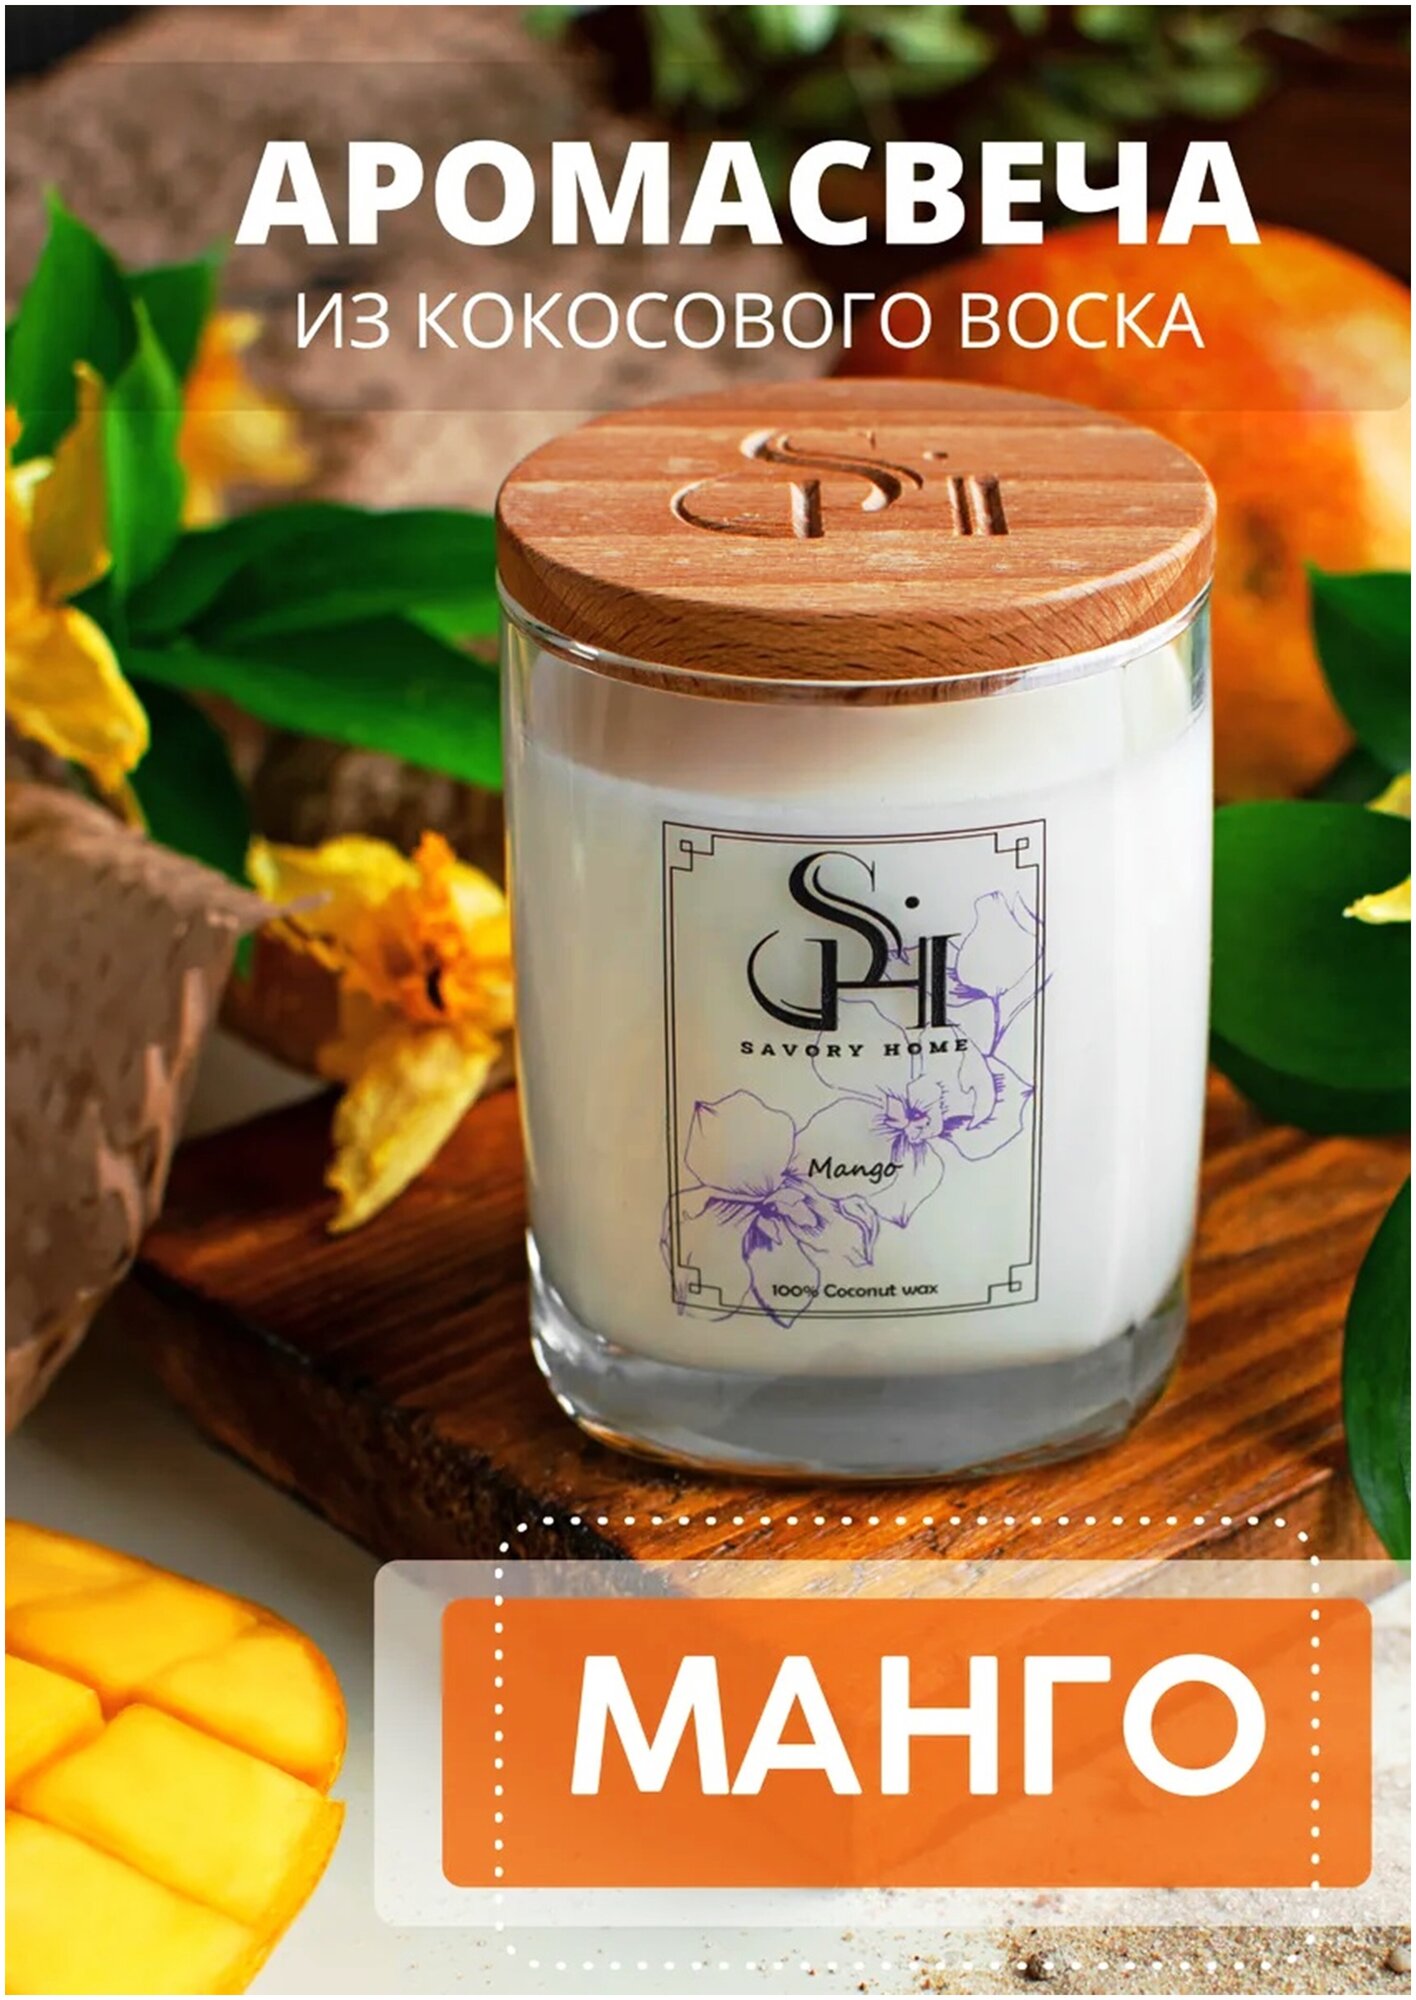 Свеча ароматическая Savory Home "Спелое Манго" 200мл, деревянный фитиль, аромасвеча в стакане с крышкой, 50 часов горения, для интерьера, в подарок